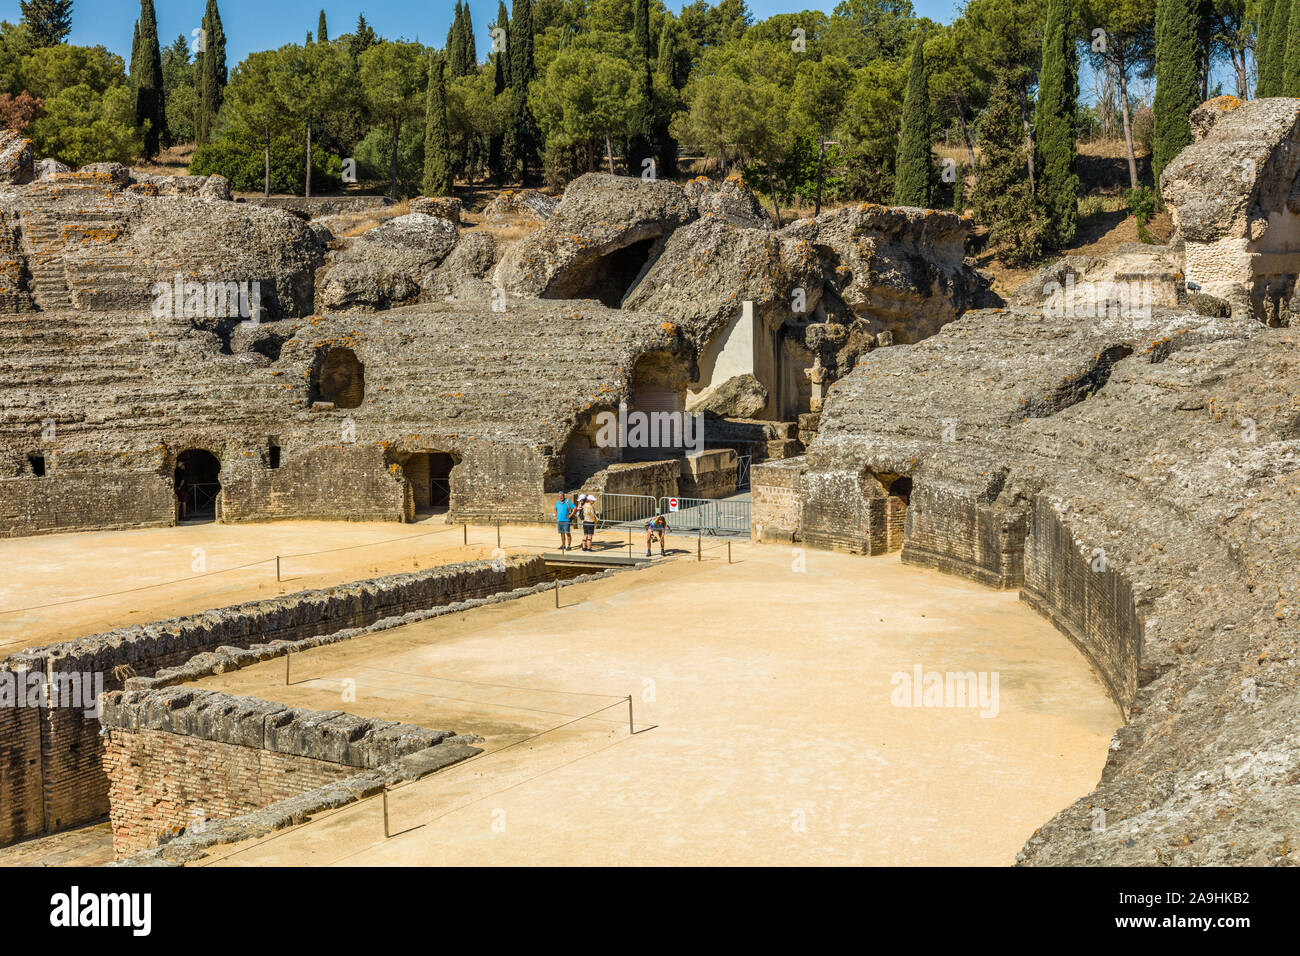 Das Amphitheater oder Kolosseum am römischen Siedlungen von Italica in Dorf Santiponcethe Spanien Stockfoto